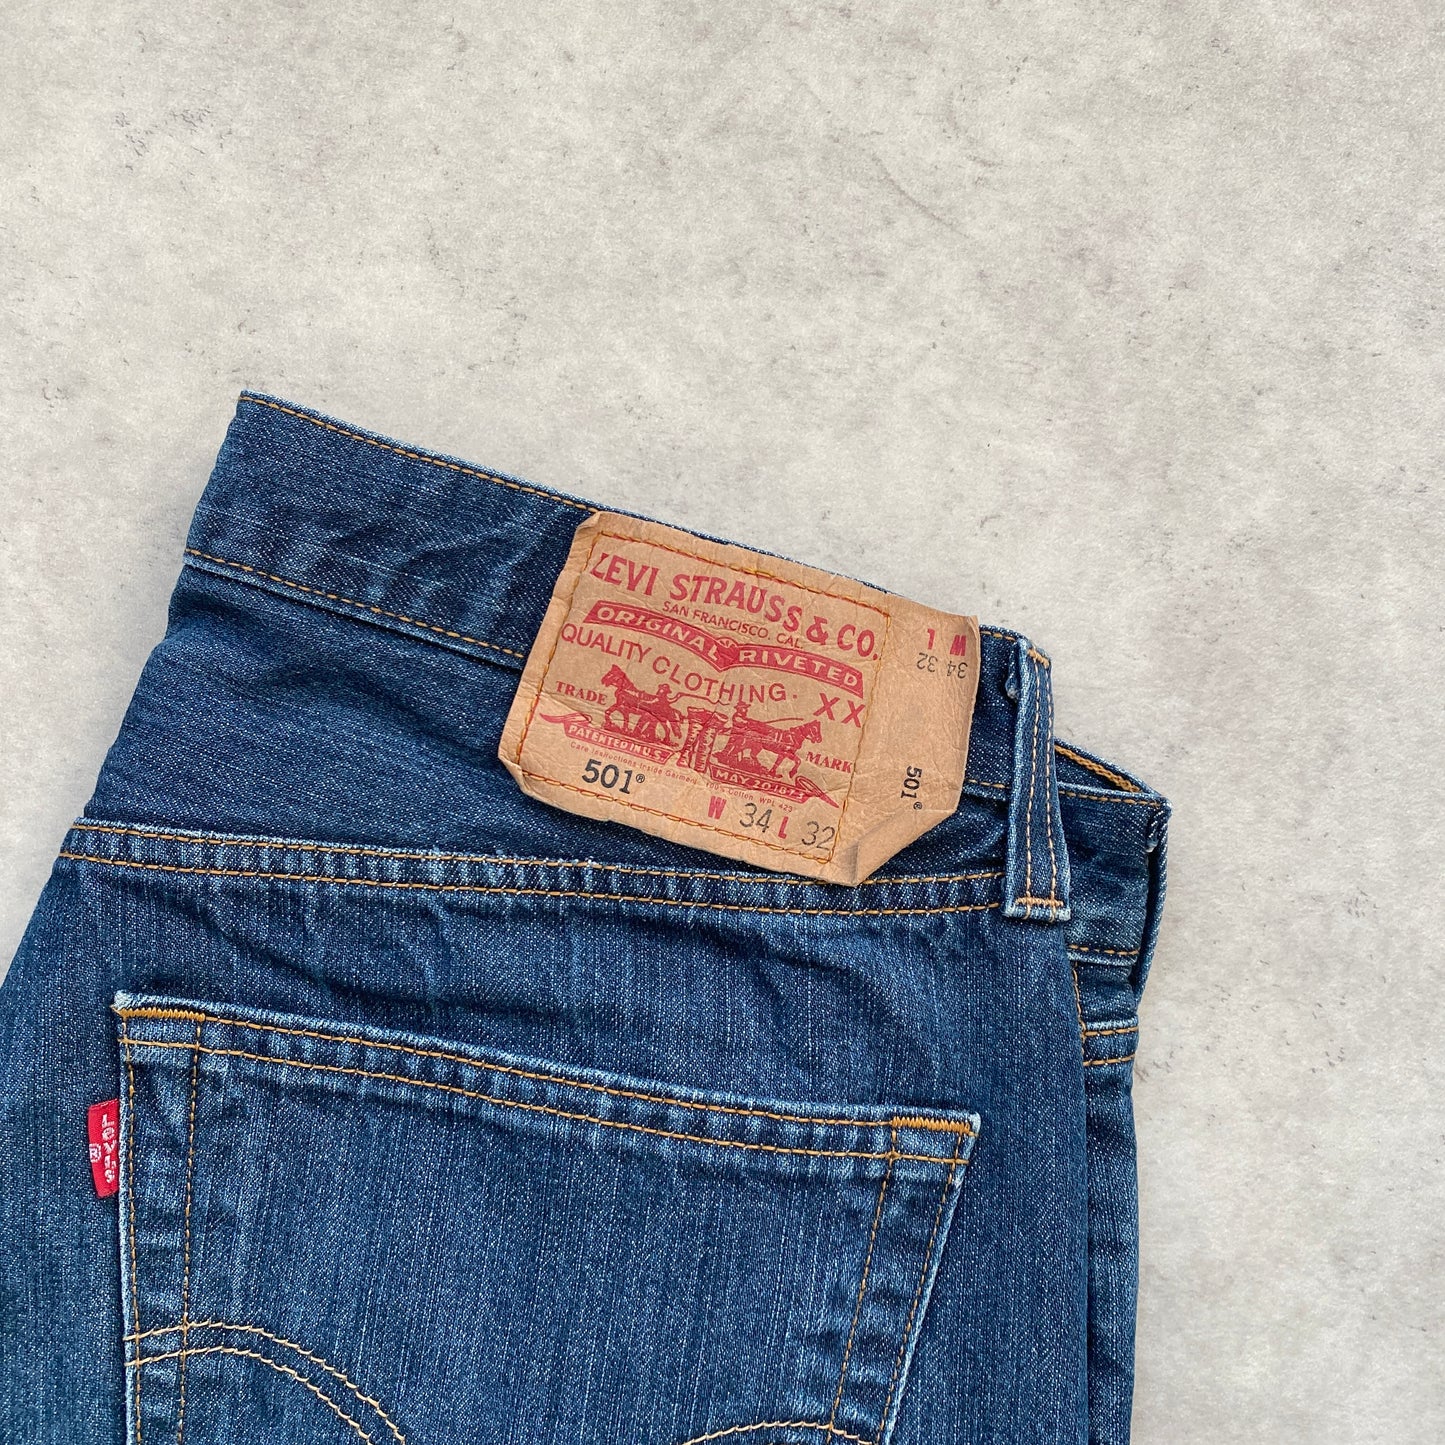 Levi‘s 501 vintage denim pants (34/32)